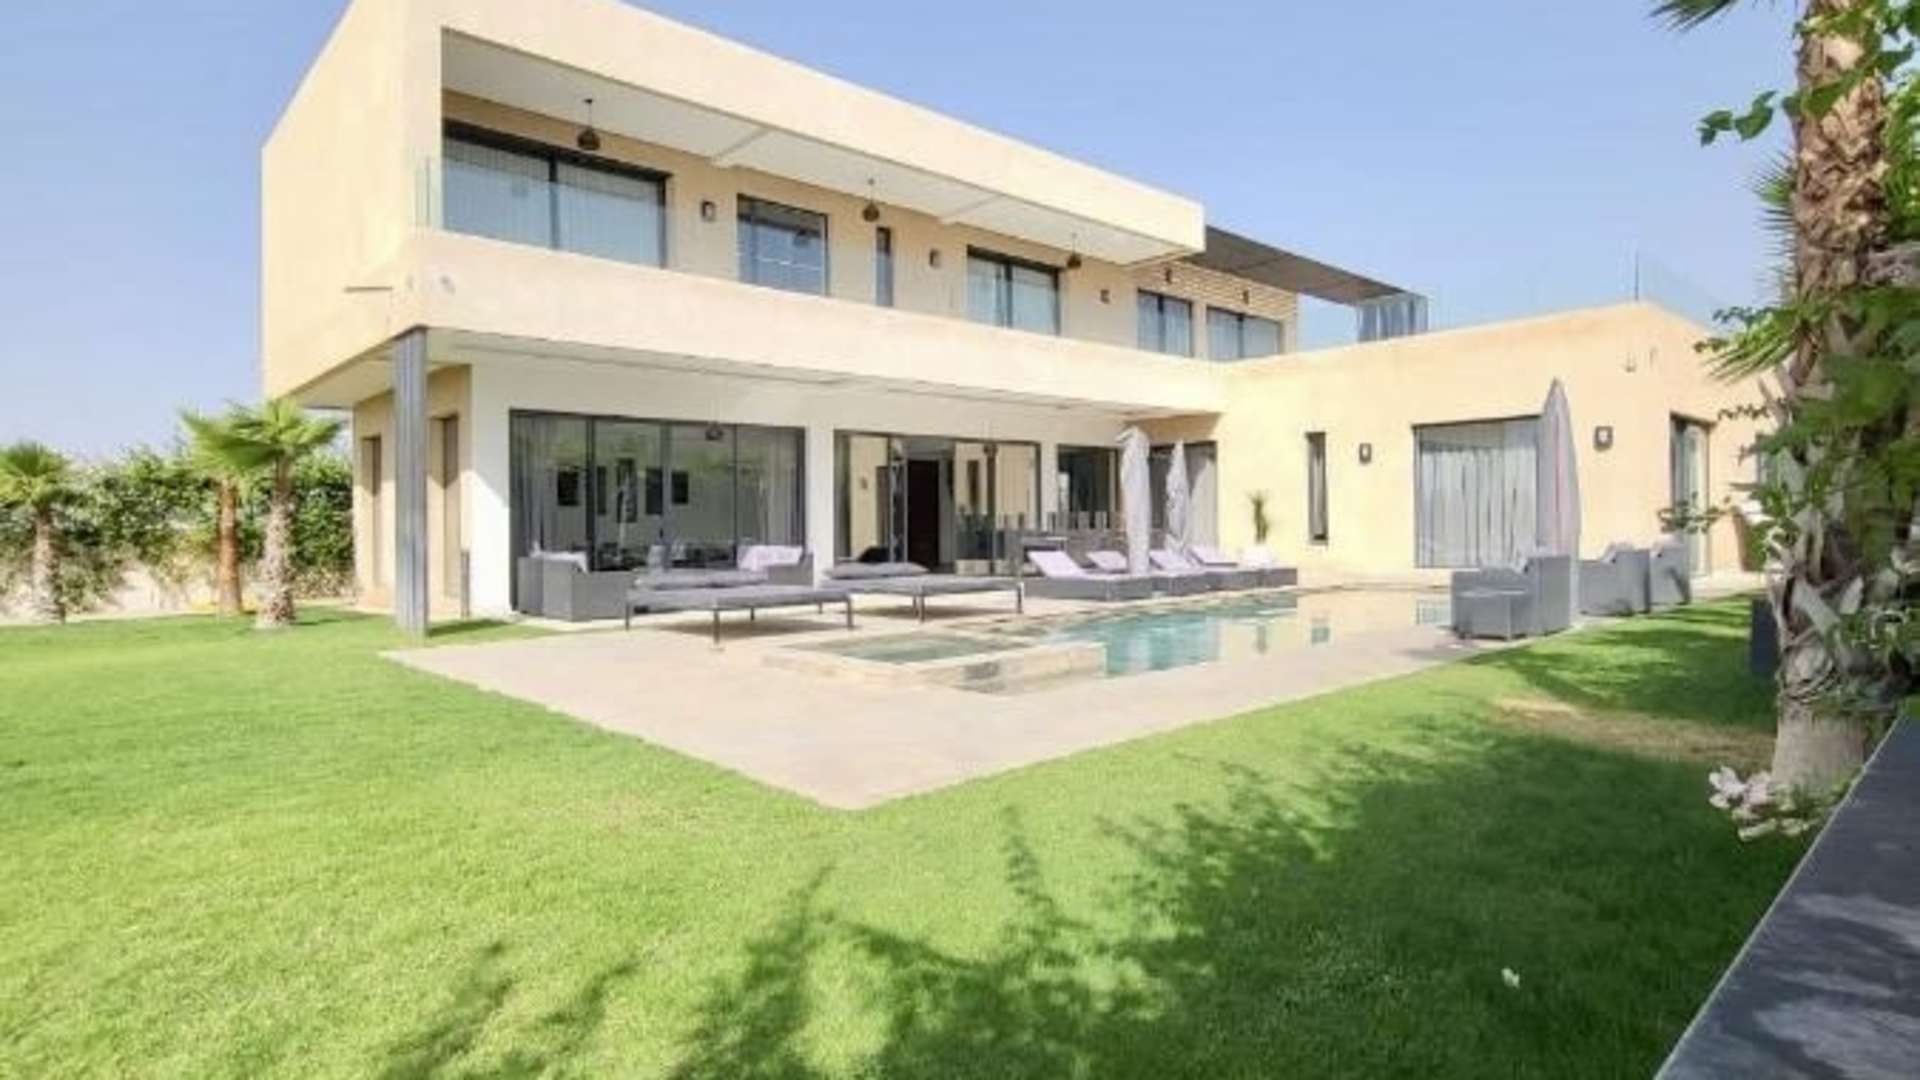 Location de vacances,Villa,Villa contemporaine de 5 suites avec piscine privée Route du barrage à Marrakech,Marrakech,Route Amizmiz